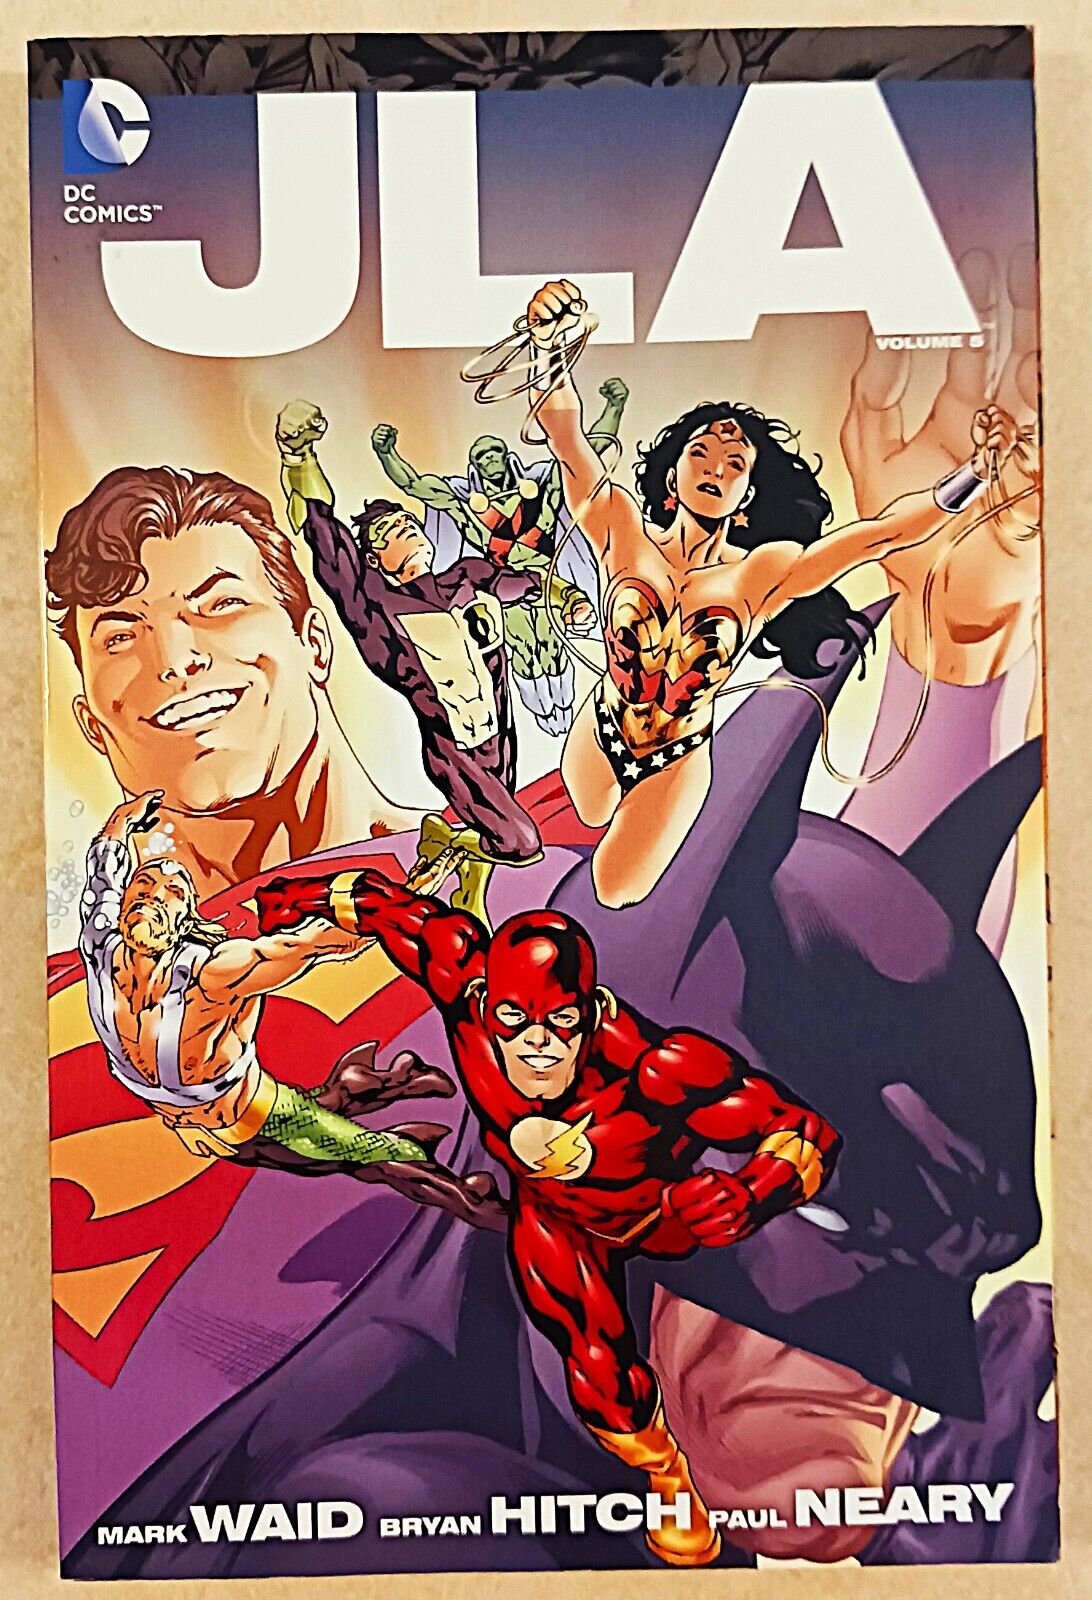 JLA Vol. 5 TPB Soft Cover Justice League of America Mark Waid Batman DC Comics